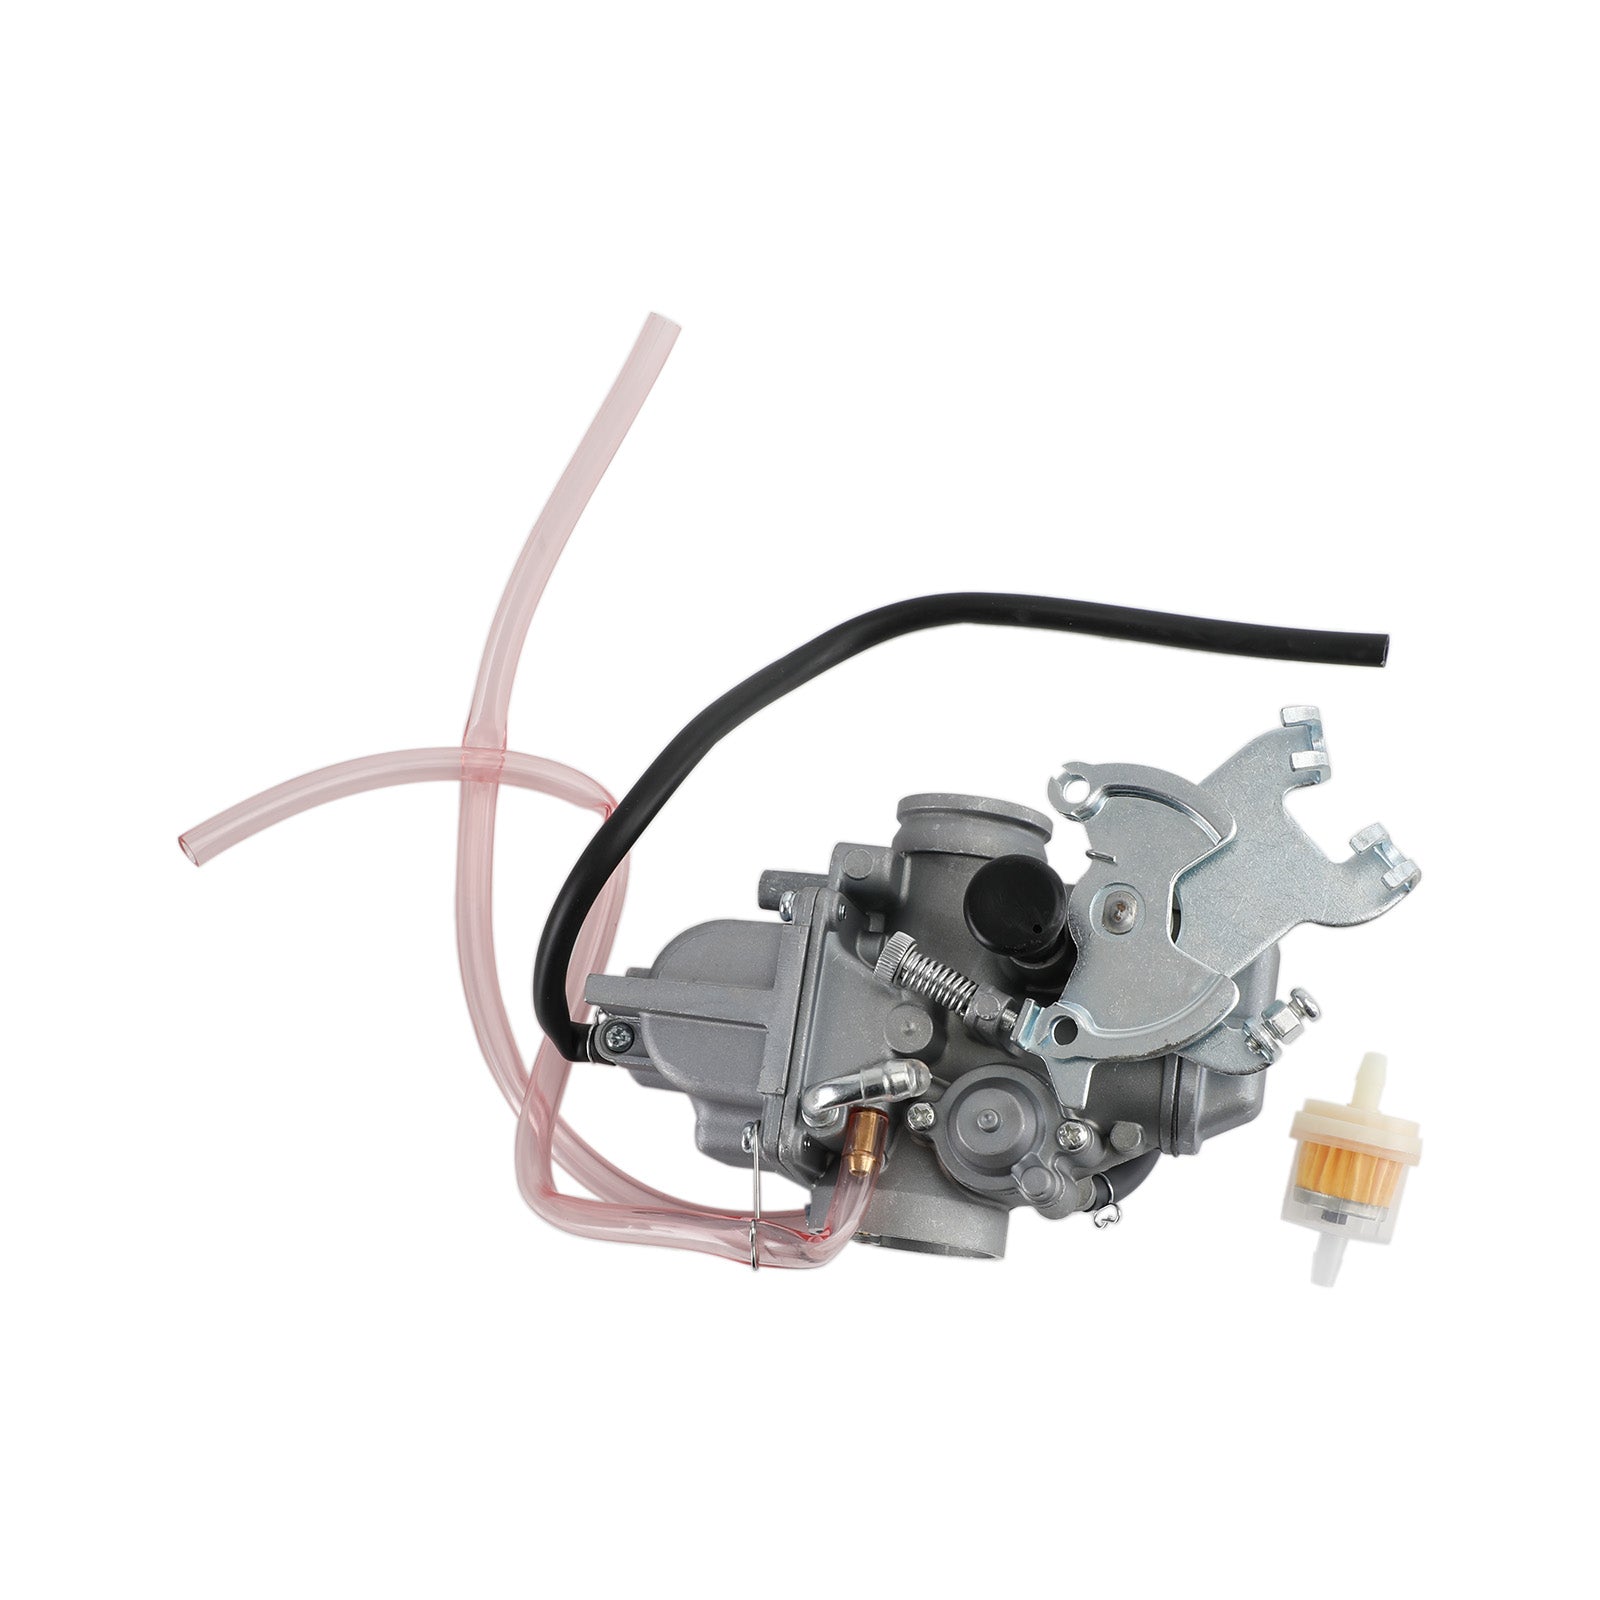 Carburetor Carb fit for Yamaha TTR-230 TTR 230 2005-2009 1C6-14301-00-00 Generic